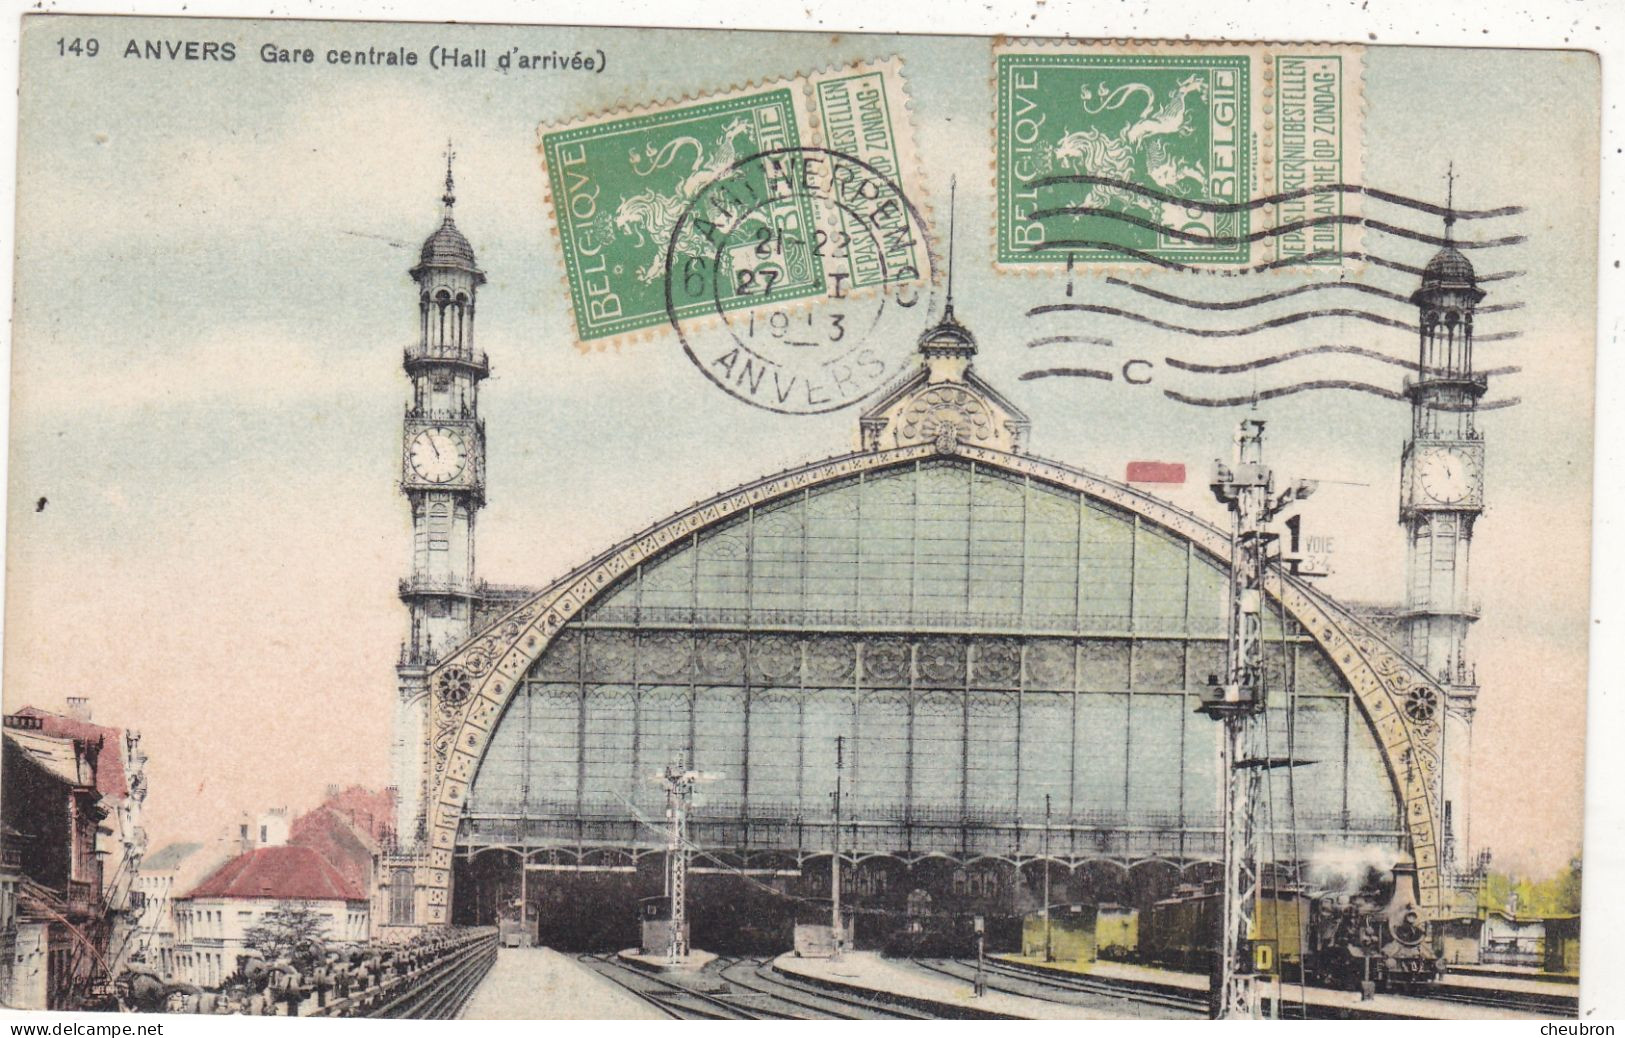 BELGIQUE. ANVERS.  CPA COLORISÉE. GARE CENTRALE. HALL D’ARRIVÉE. ANNEE 1913 + TEXTE - Antwerpen